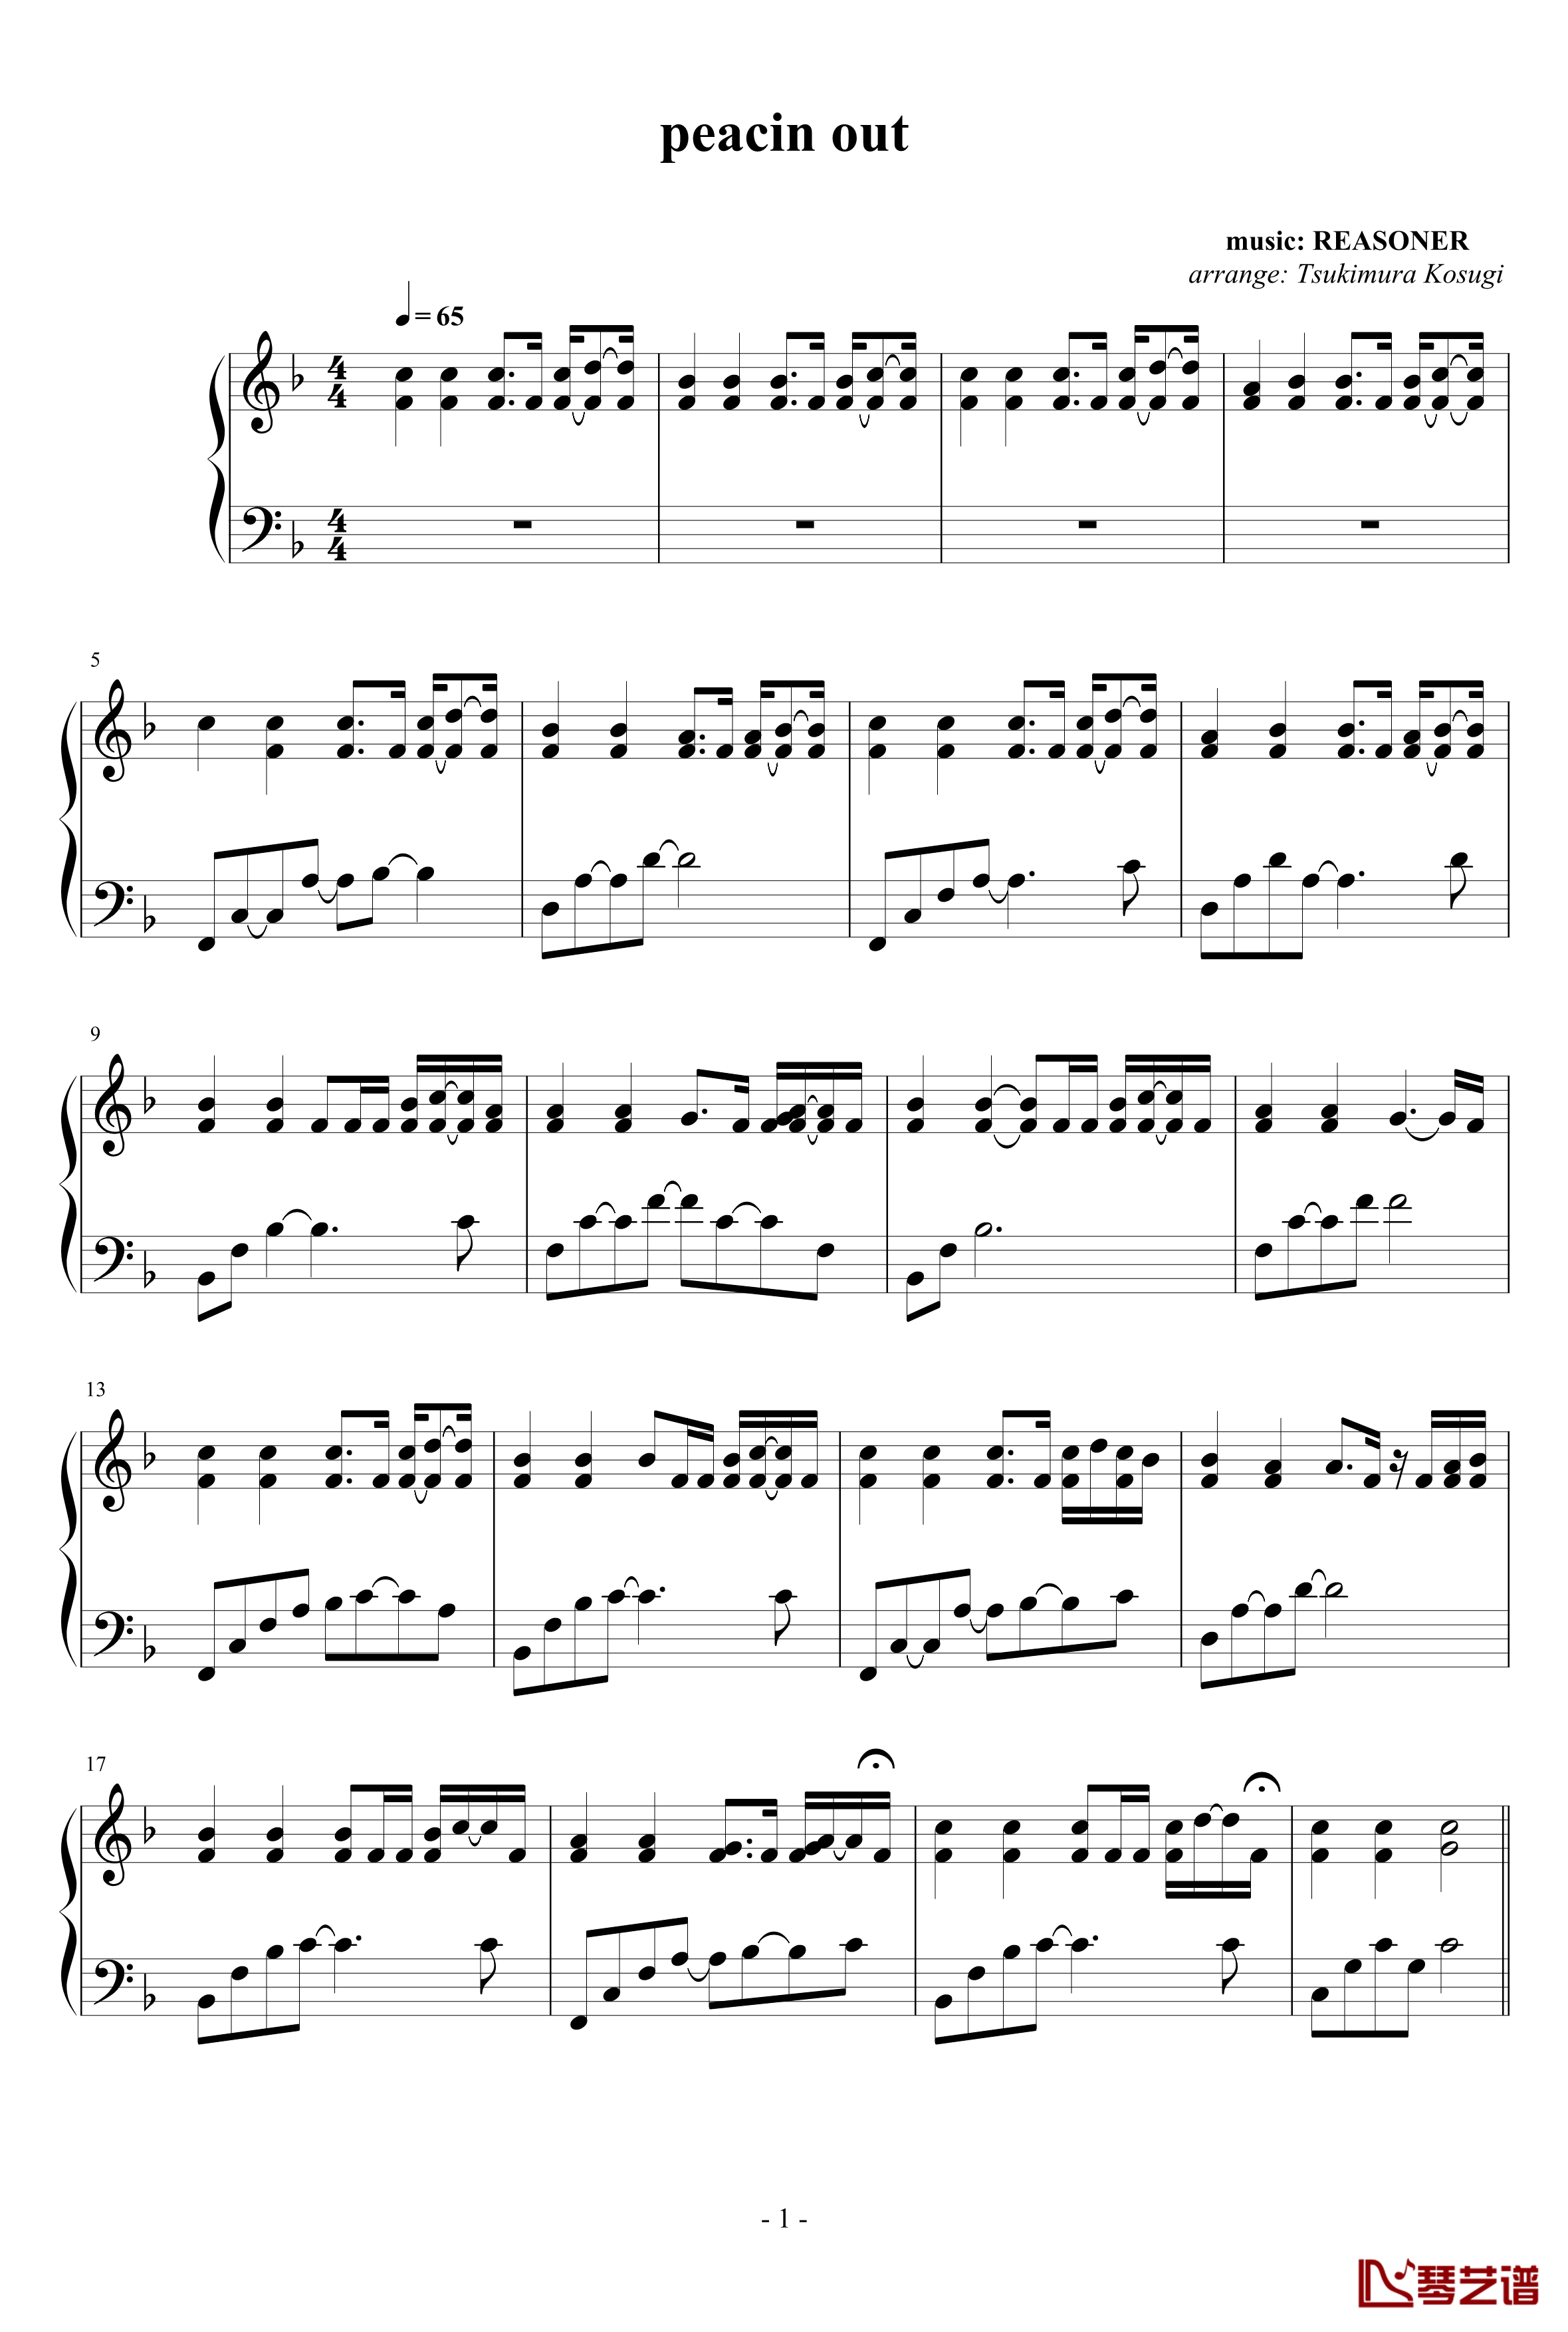 peacin out钢琴谱-REASONER1